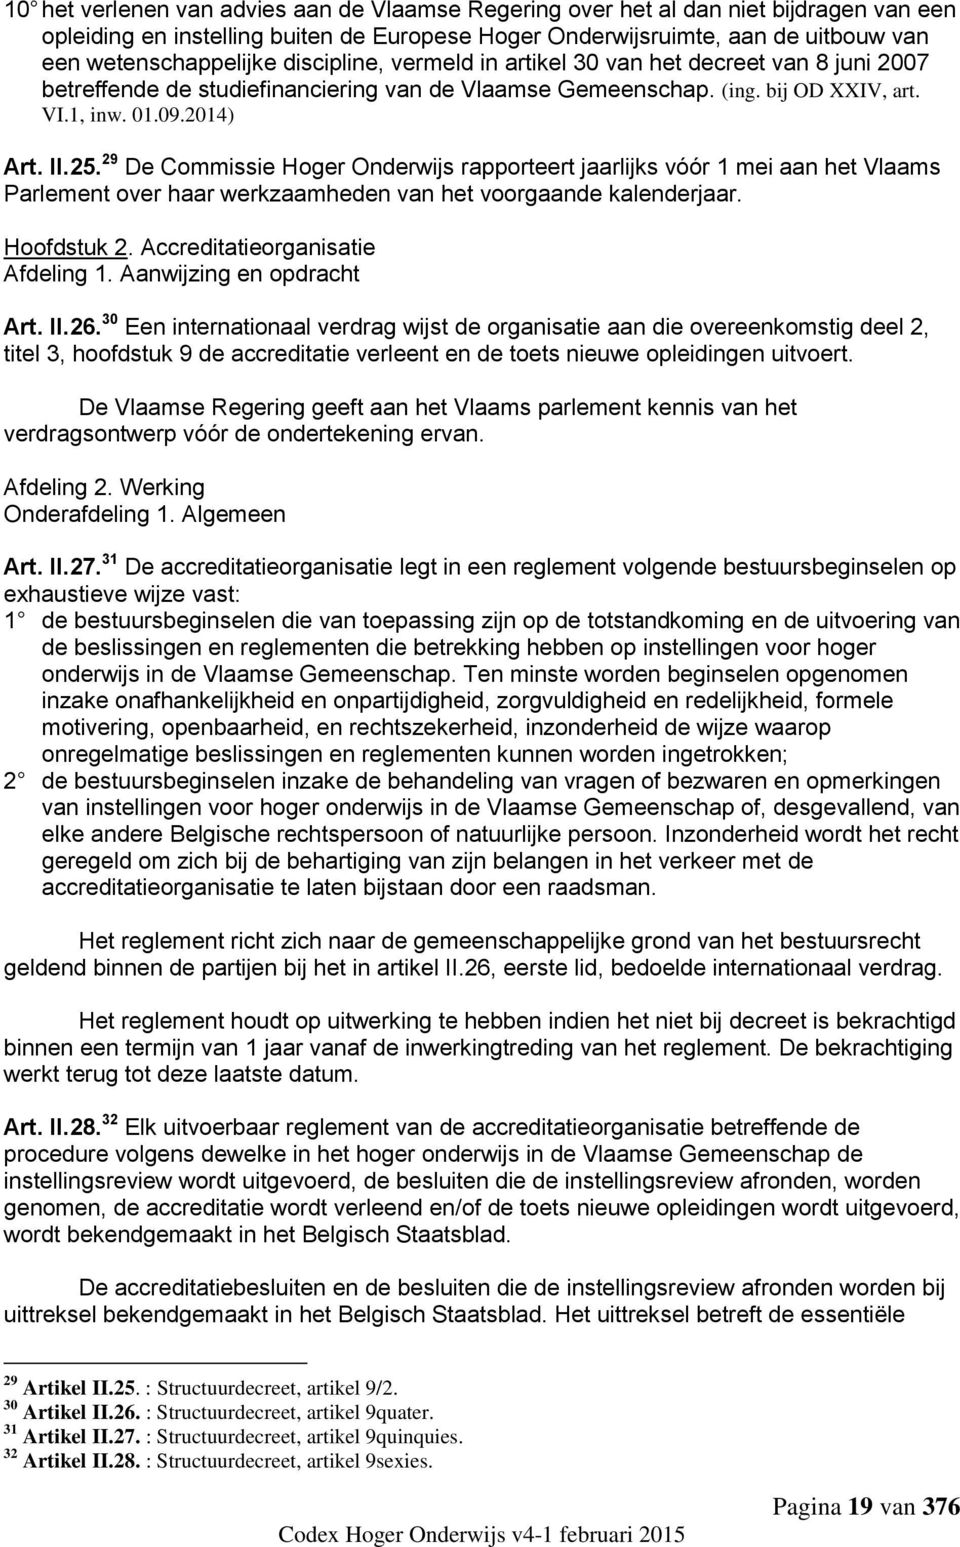 29 De Commissie Hoger Onderwijs rapporteert jaarlijks vóór 1 mei aan het Vlaams Parlement over haar werkzaamheden van het voorgaande kalenderjaar. Hoofdstuk 2. Accreditatieorganisatie Afdeling 1.